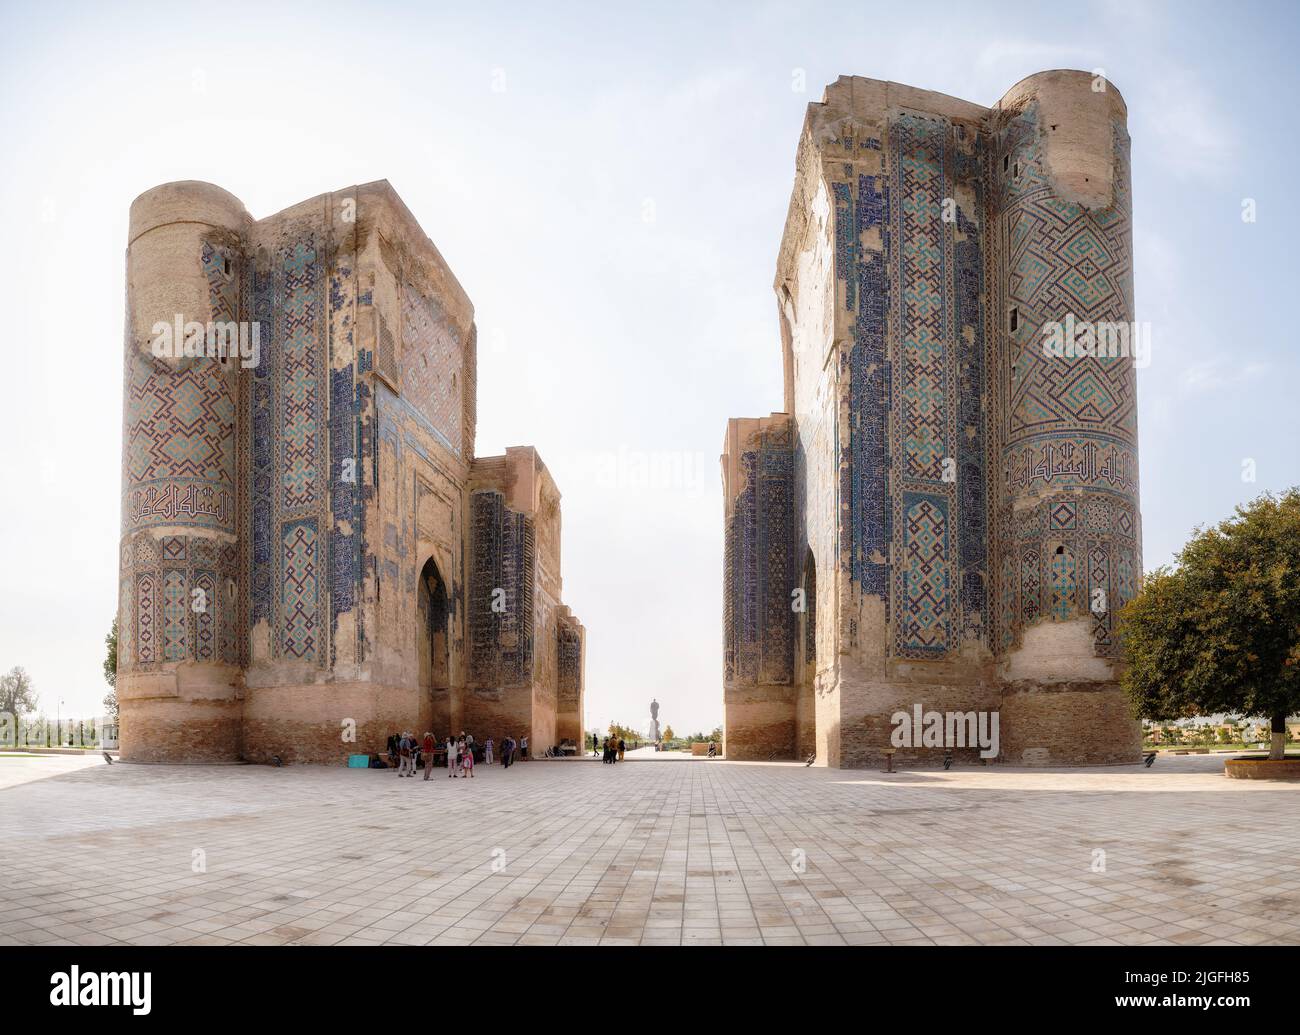 Shakhrisabz, Uzbekistan - October 16, 2016: Ruins of Timur's palace Ak Saray in his hometown of Shakhrisabz Stock Photo